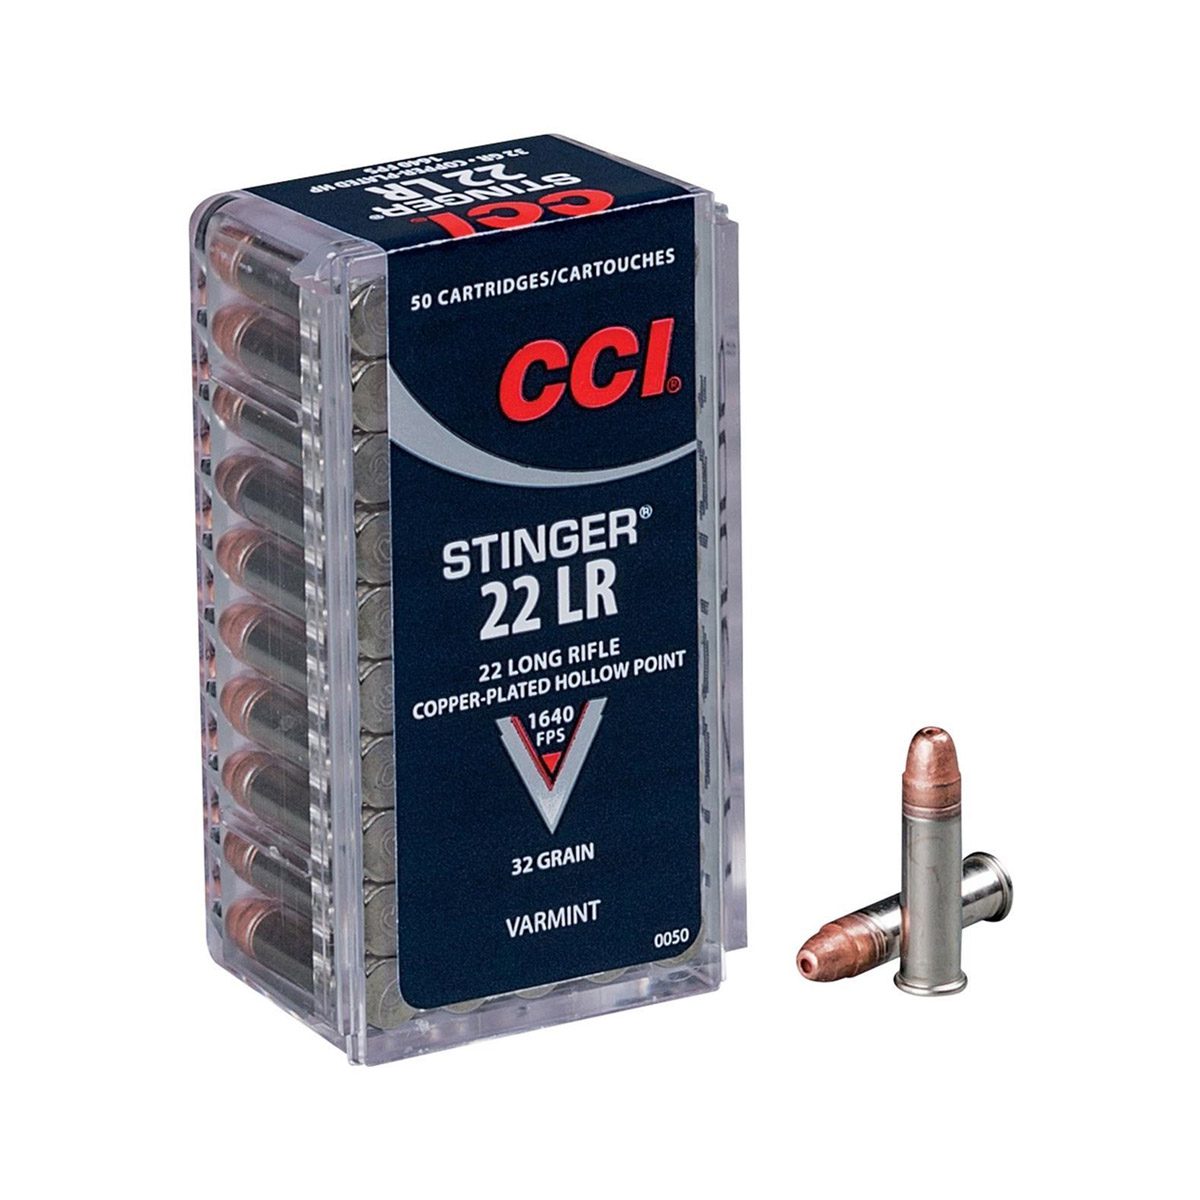 CCI Stinger .22 LR – 50 Rounds